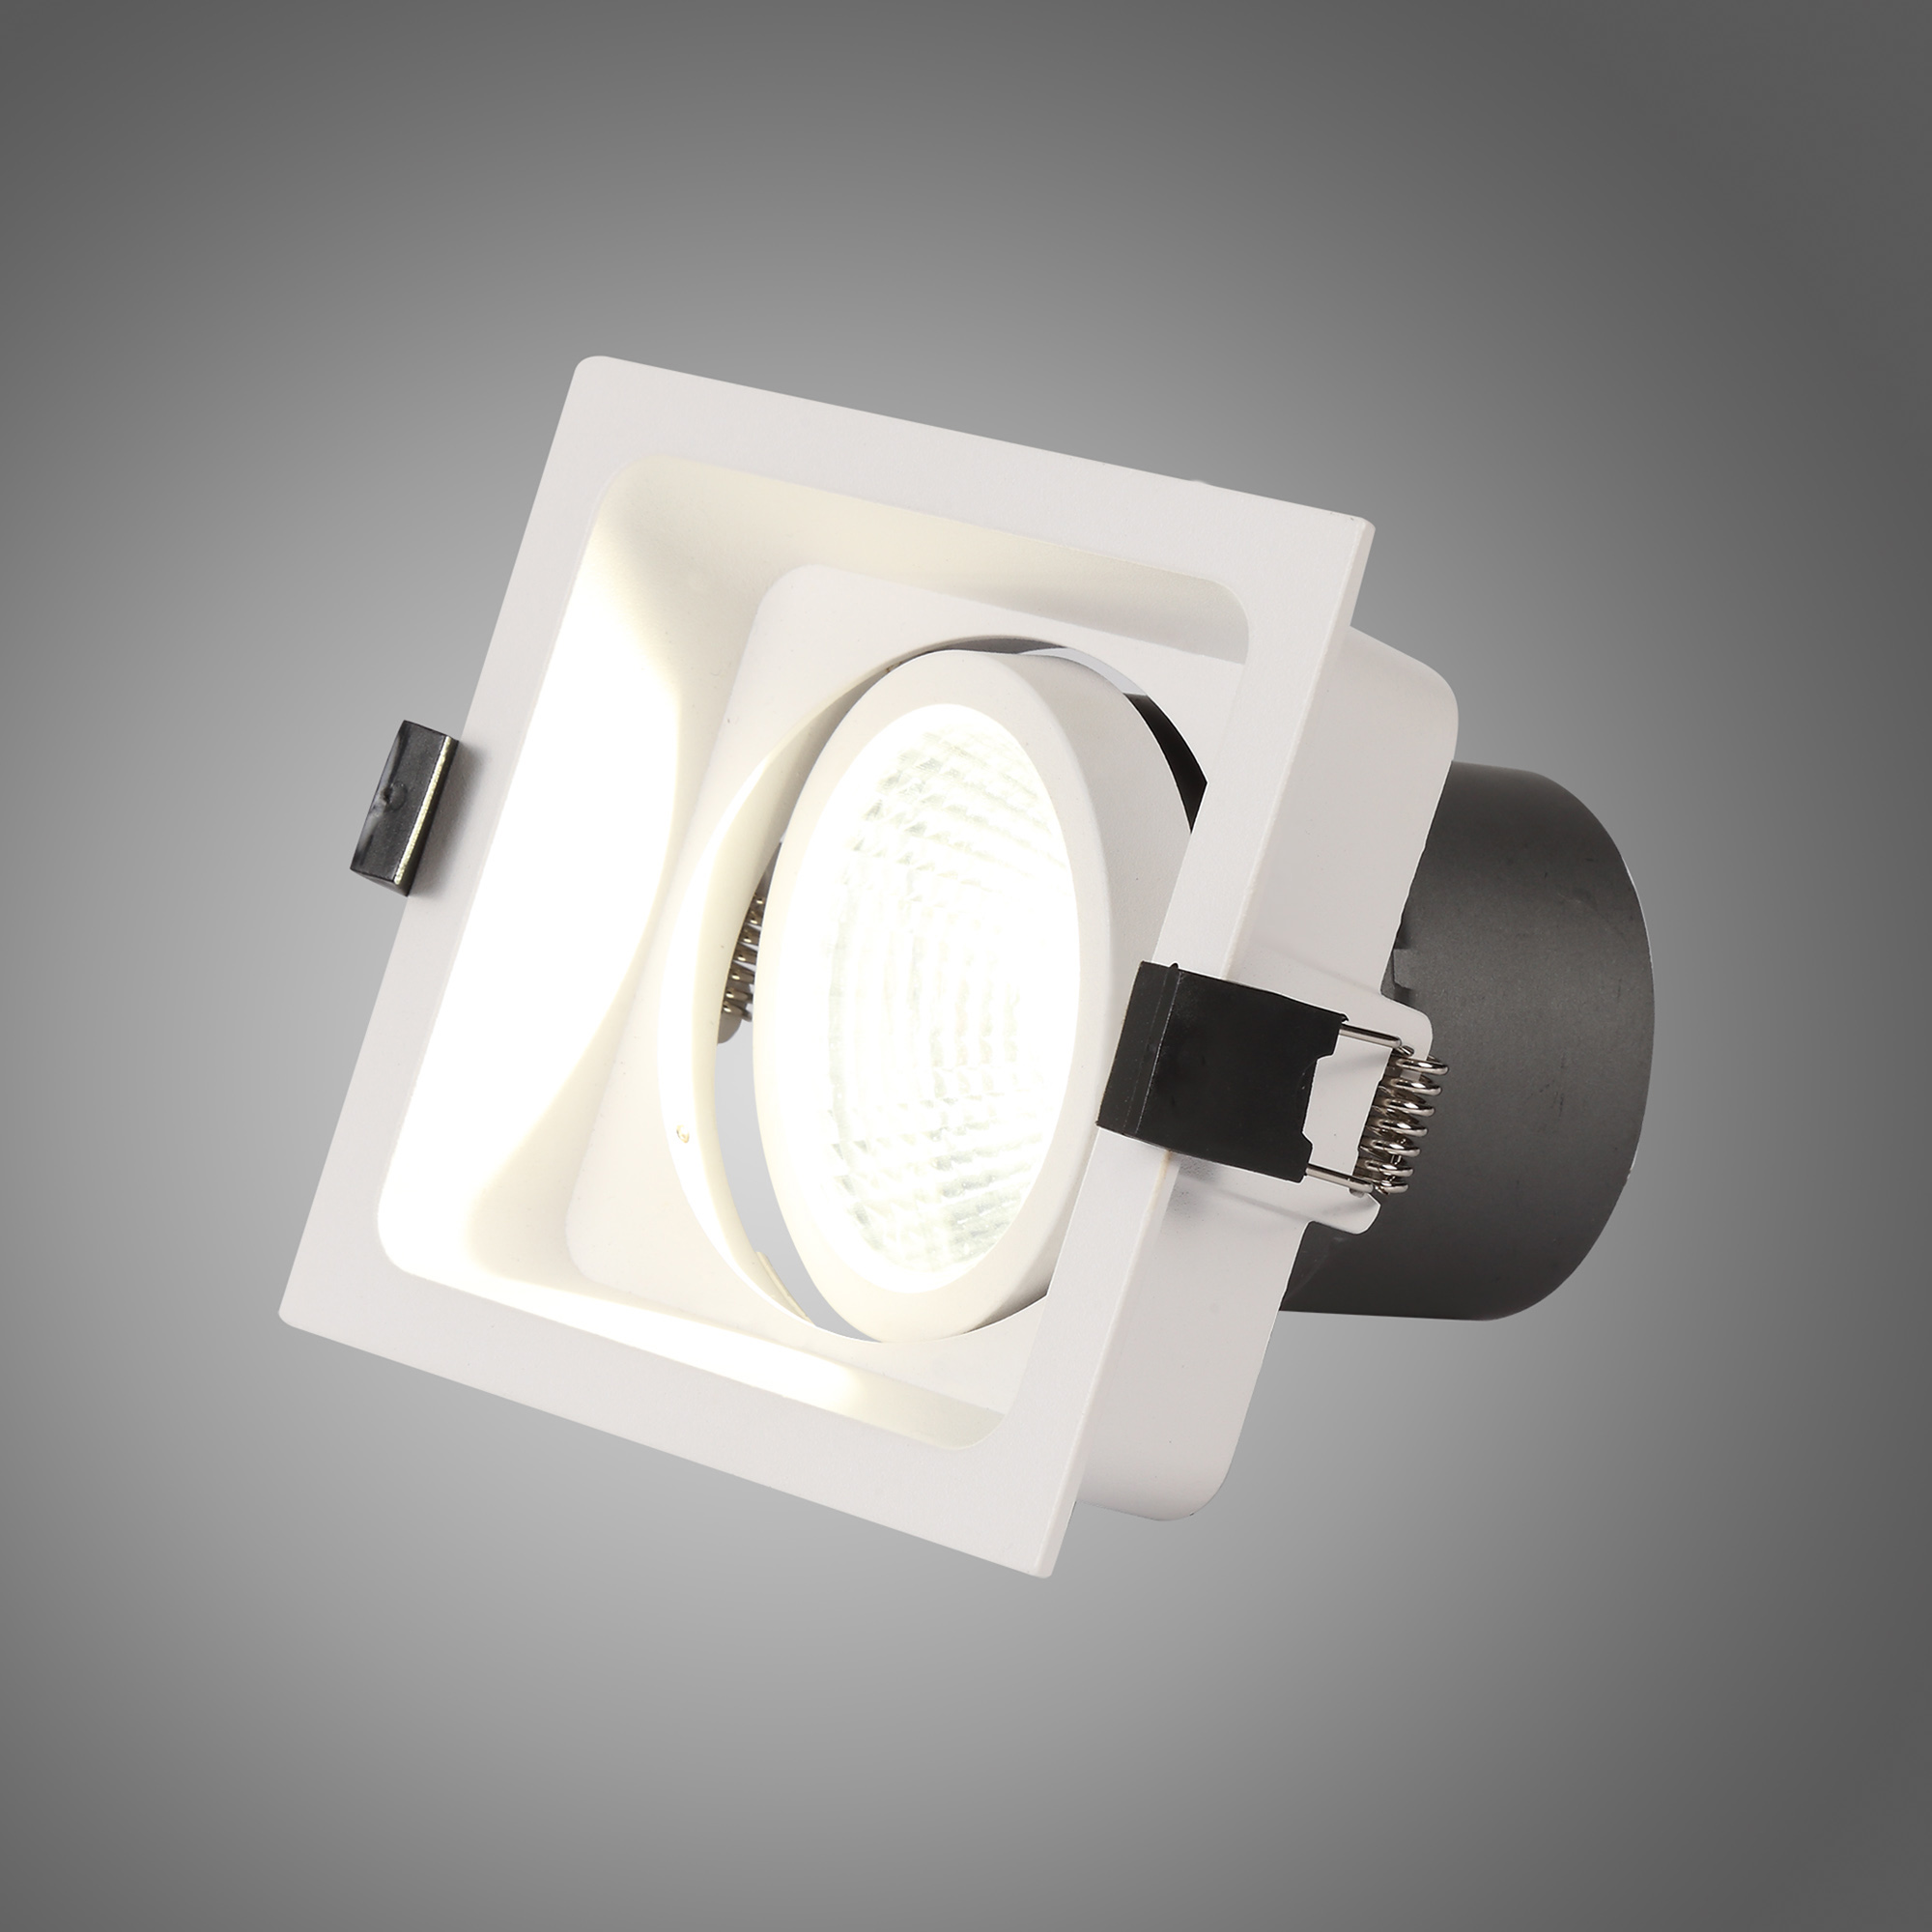 Bodar SQ A 20 Recessed Ceiling Luminaires Dlux Square/Rectangular Recess Ceiling